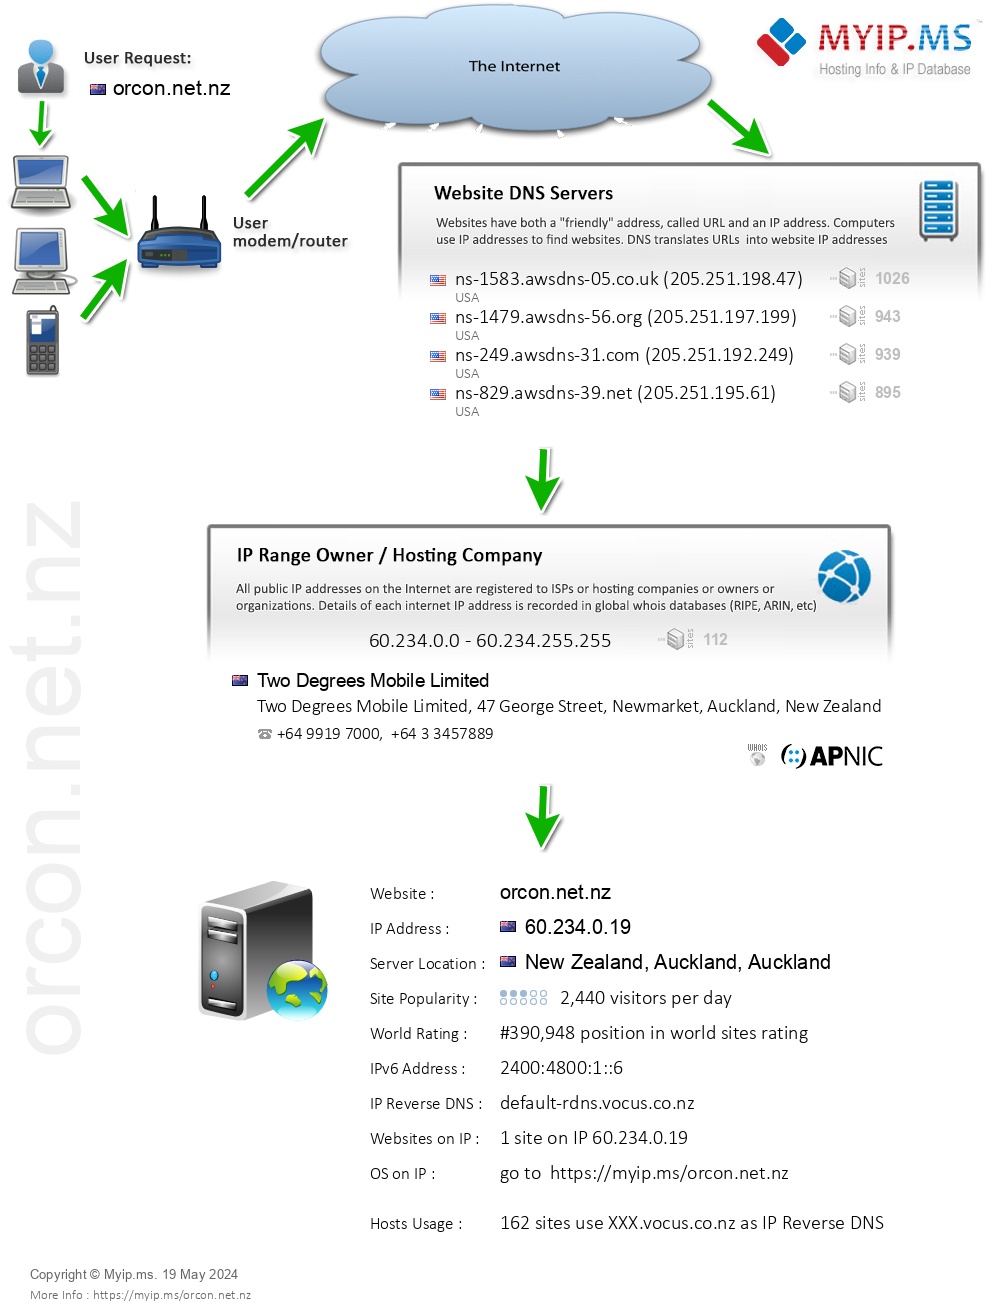 Orcon.net.nz - Website Hosting Visual IP Diagram